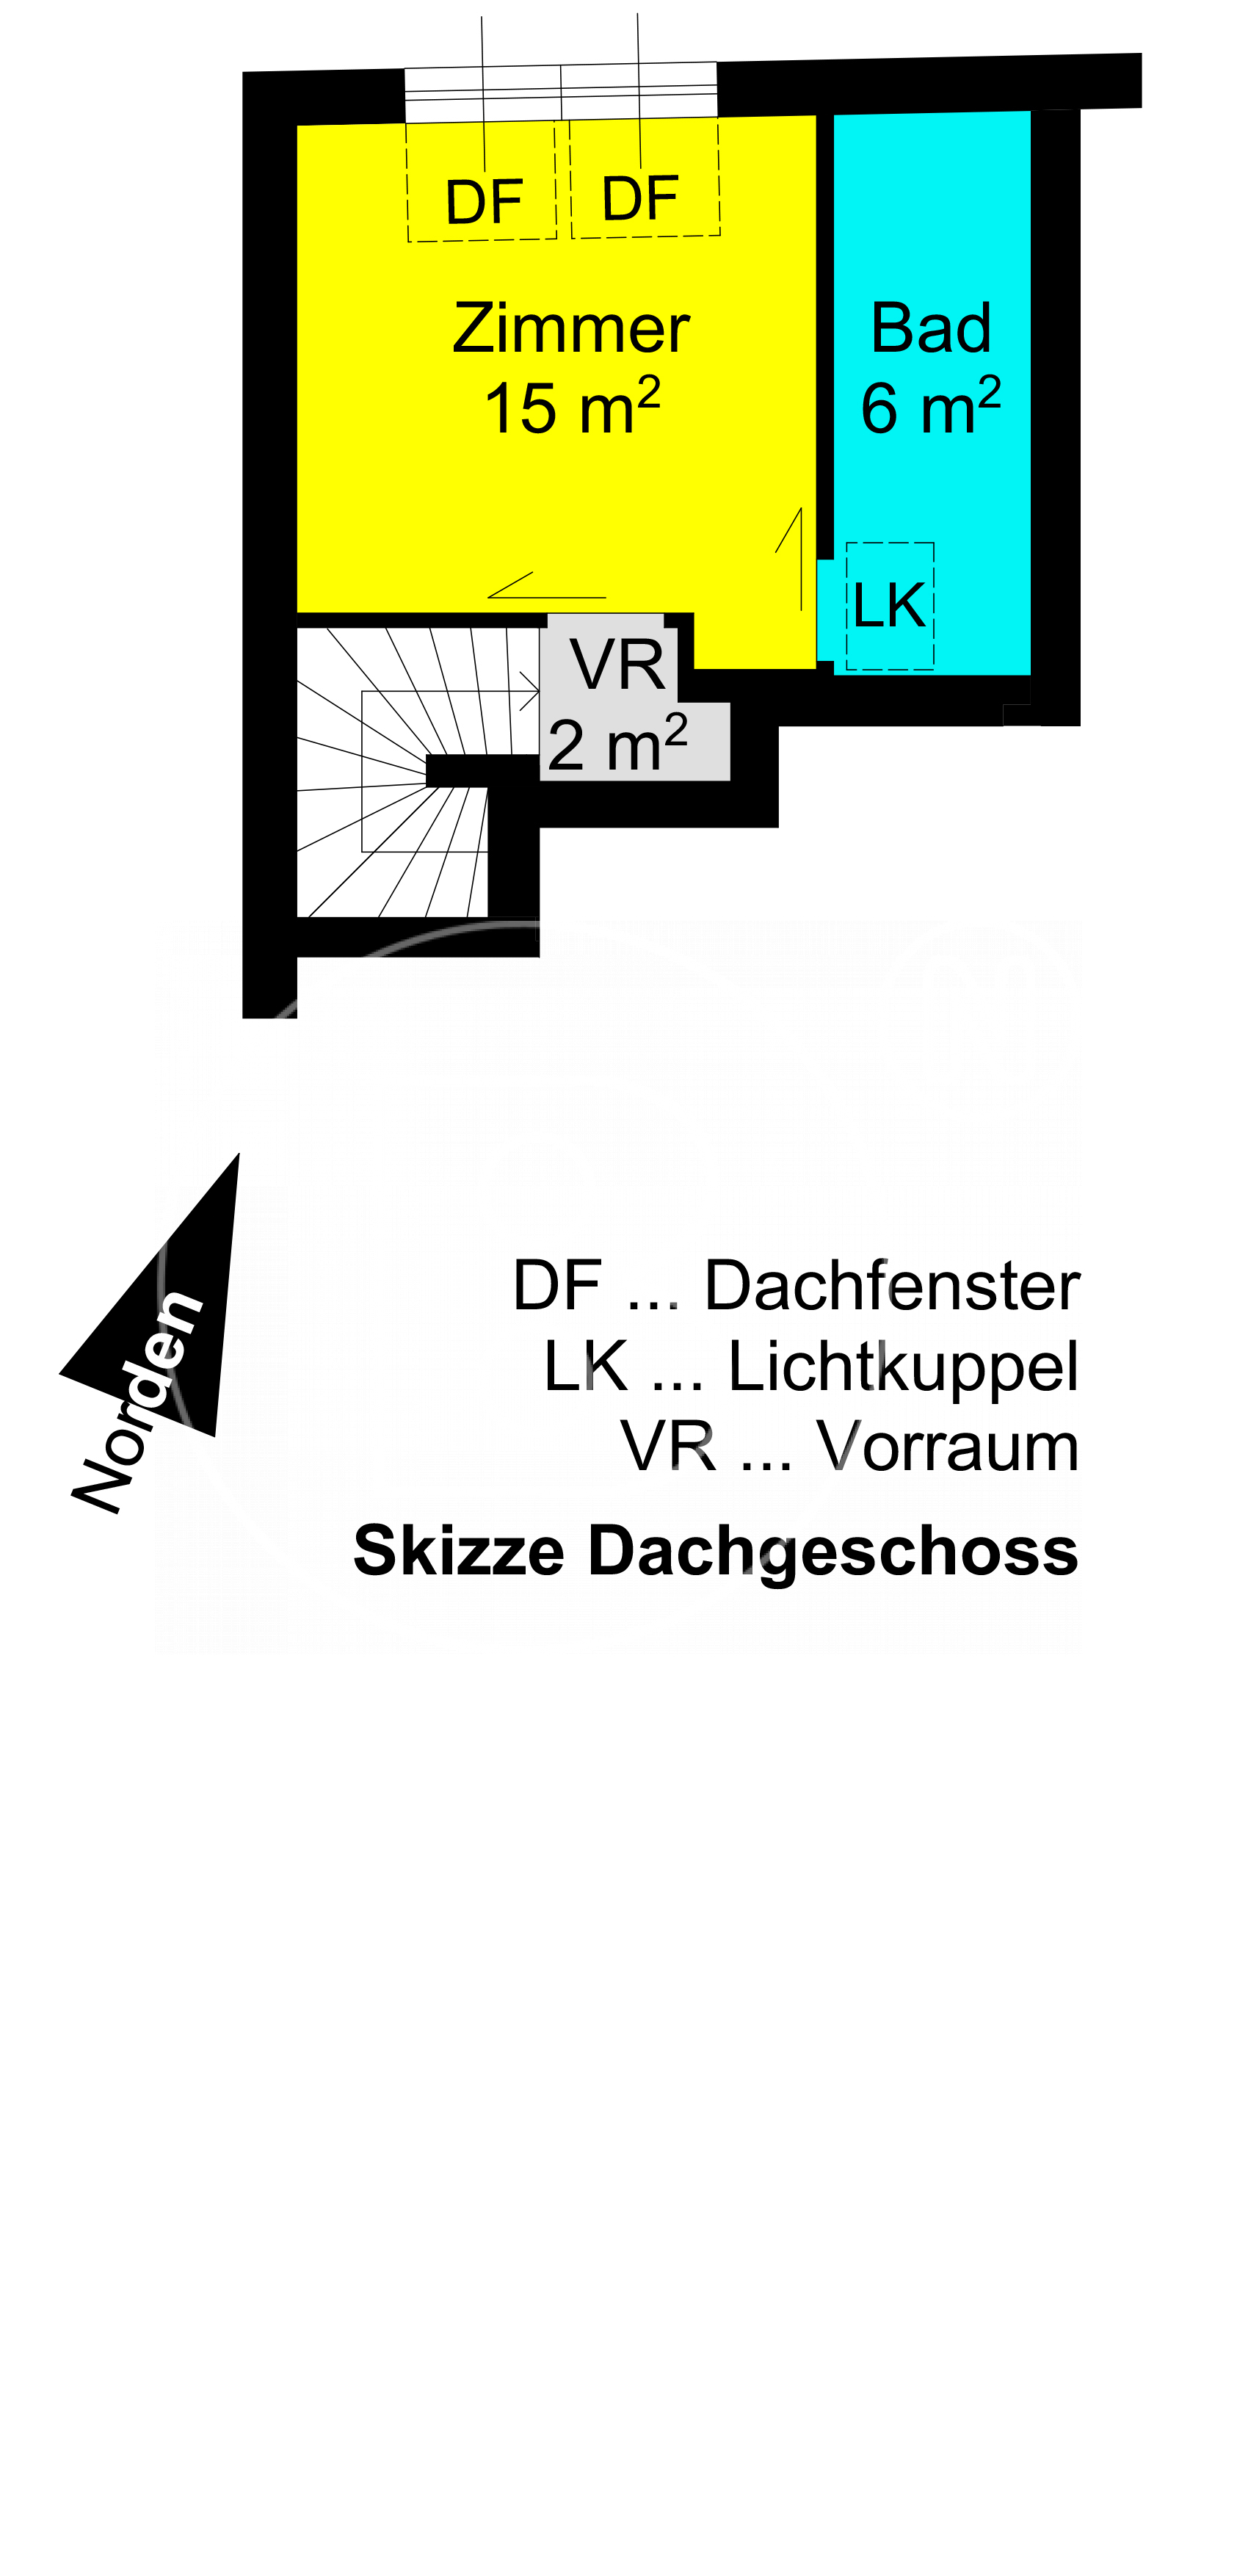 GRUNDRISS - Moderne 4-Zimmer-Balkon-Maisonette mit Garage!